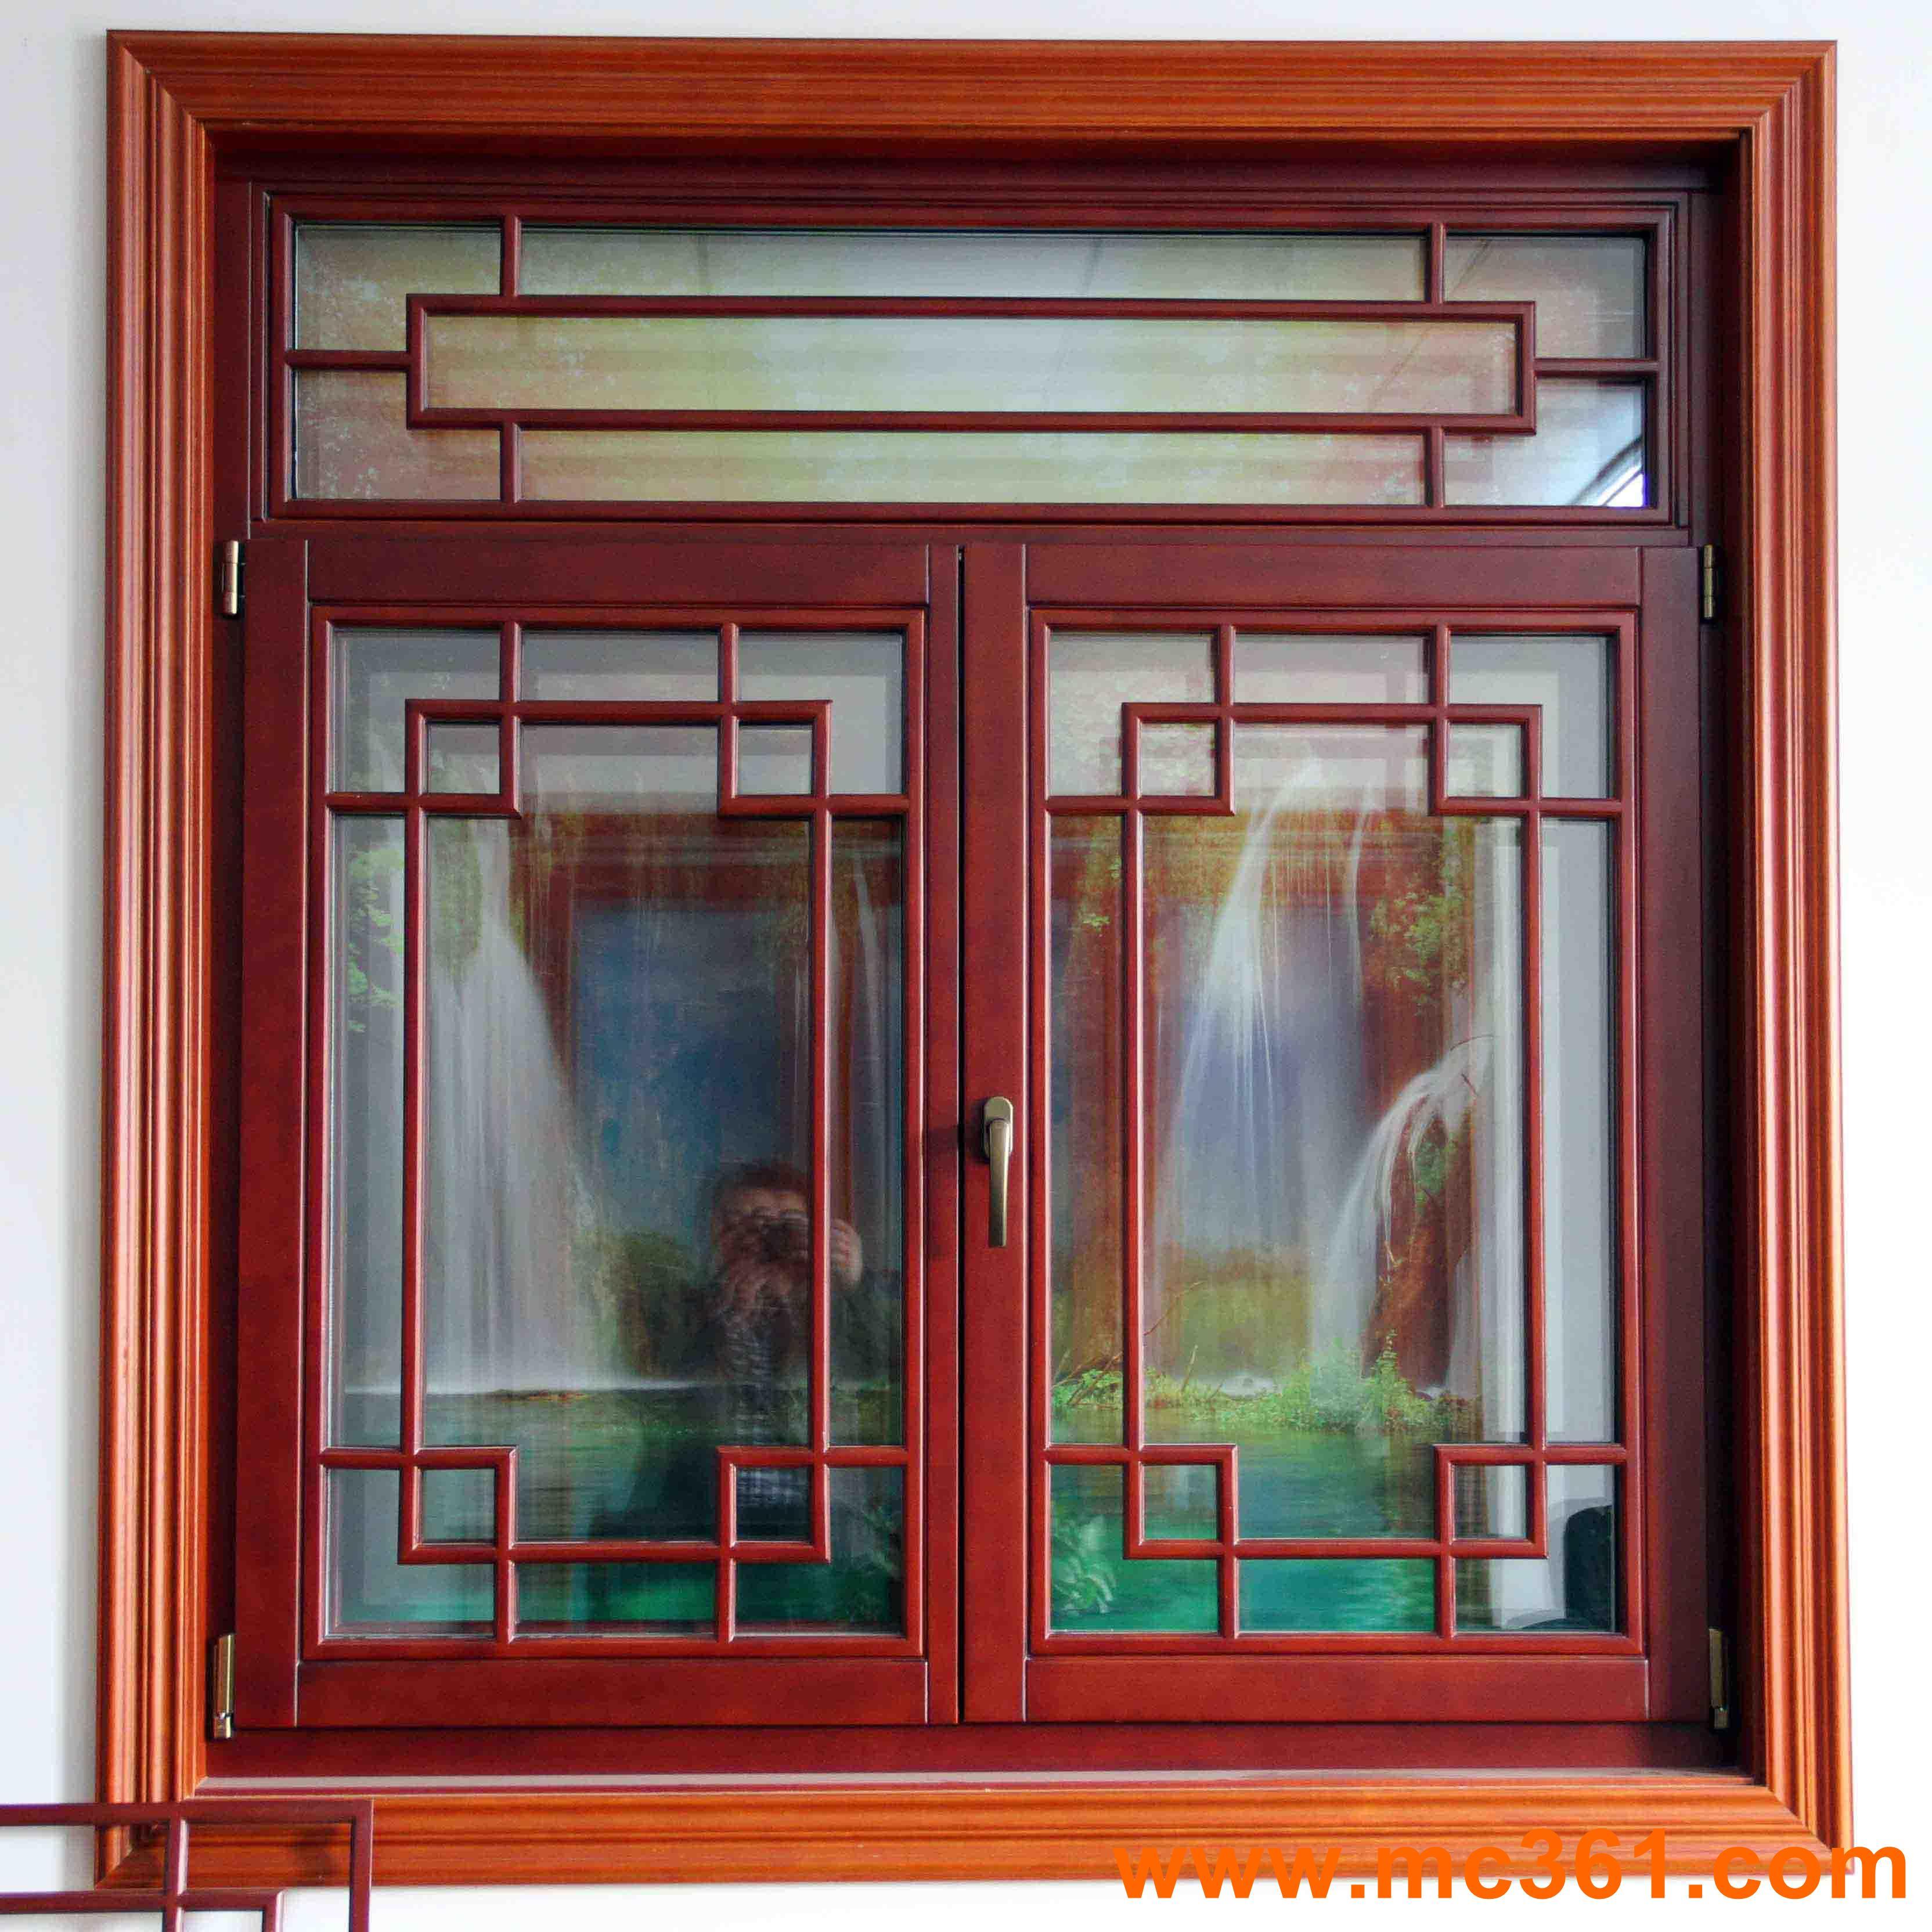 木门窗组合韦柏纱窗|隐形纱窗应用案例 - 韦柏纱窗|上海青木纱窗公司